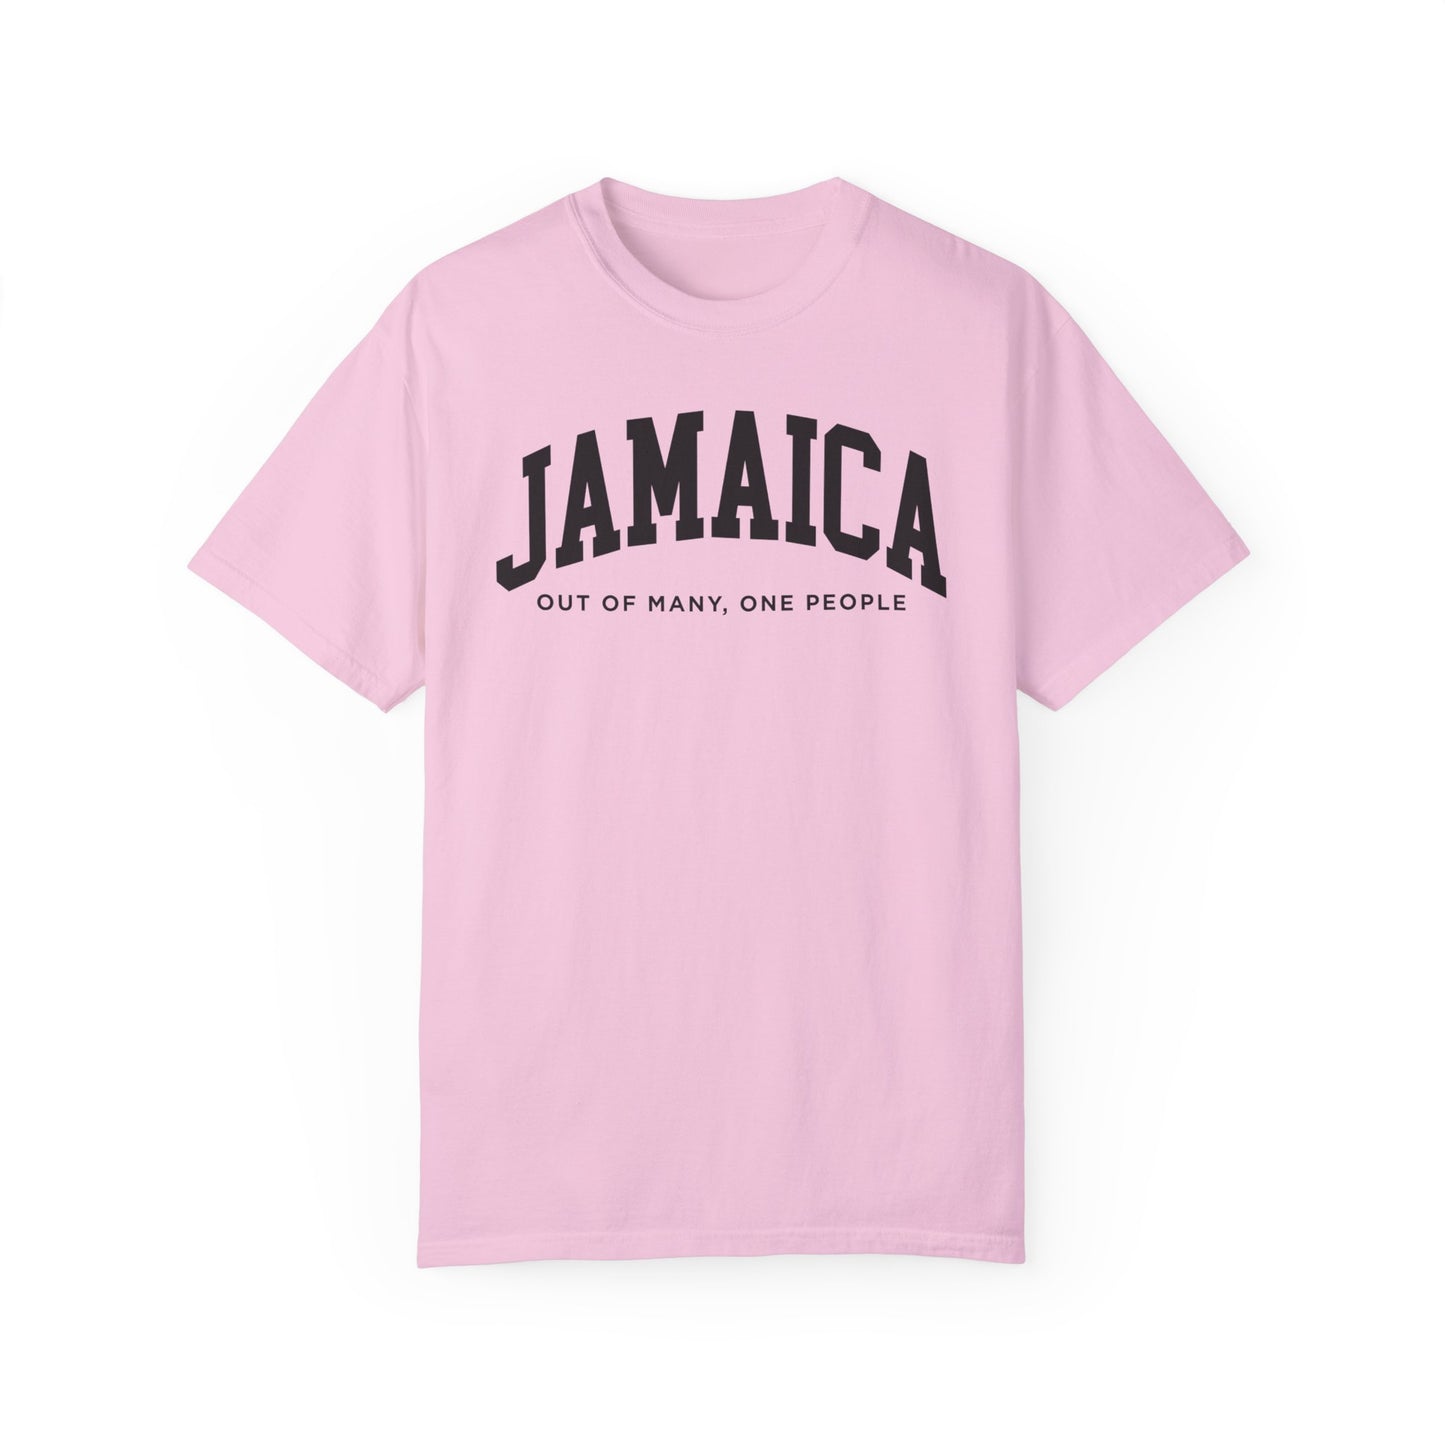 Jamaica Comfort Colors® Tee